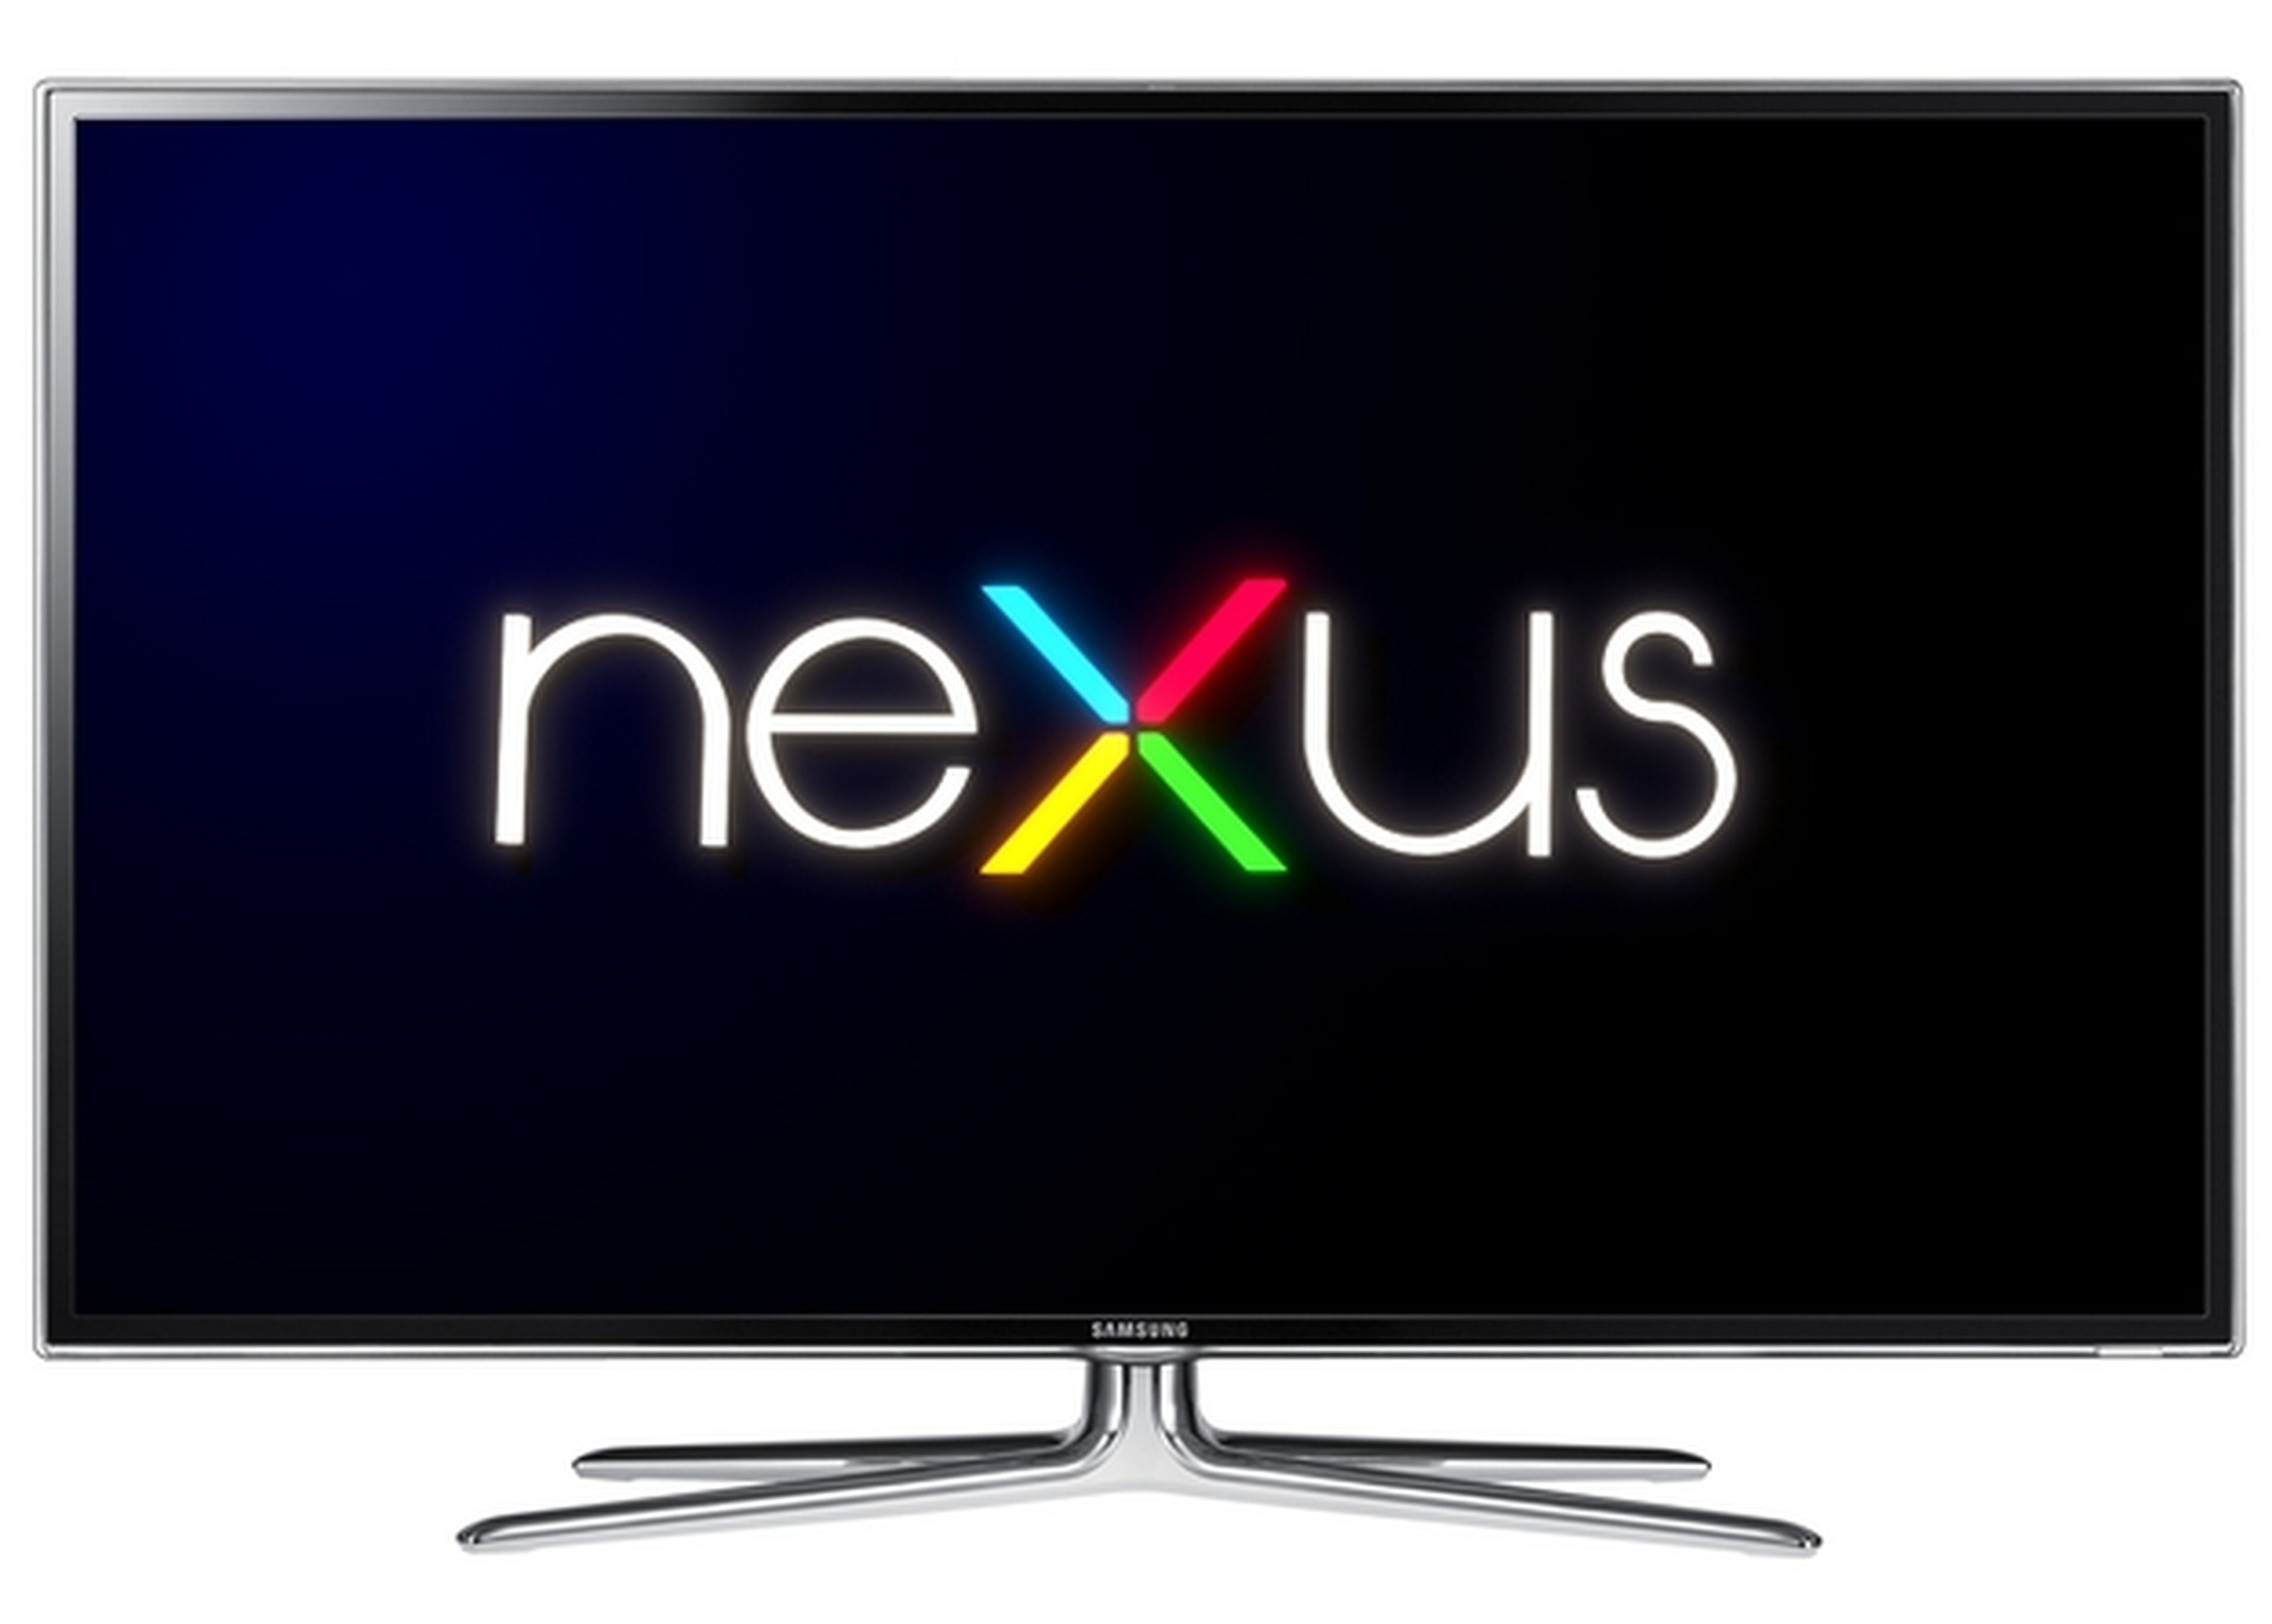 Nexus TV, ¿la televisión de Google?